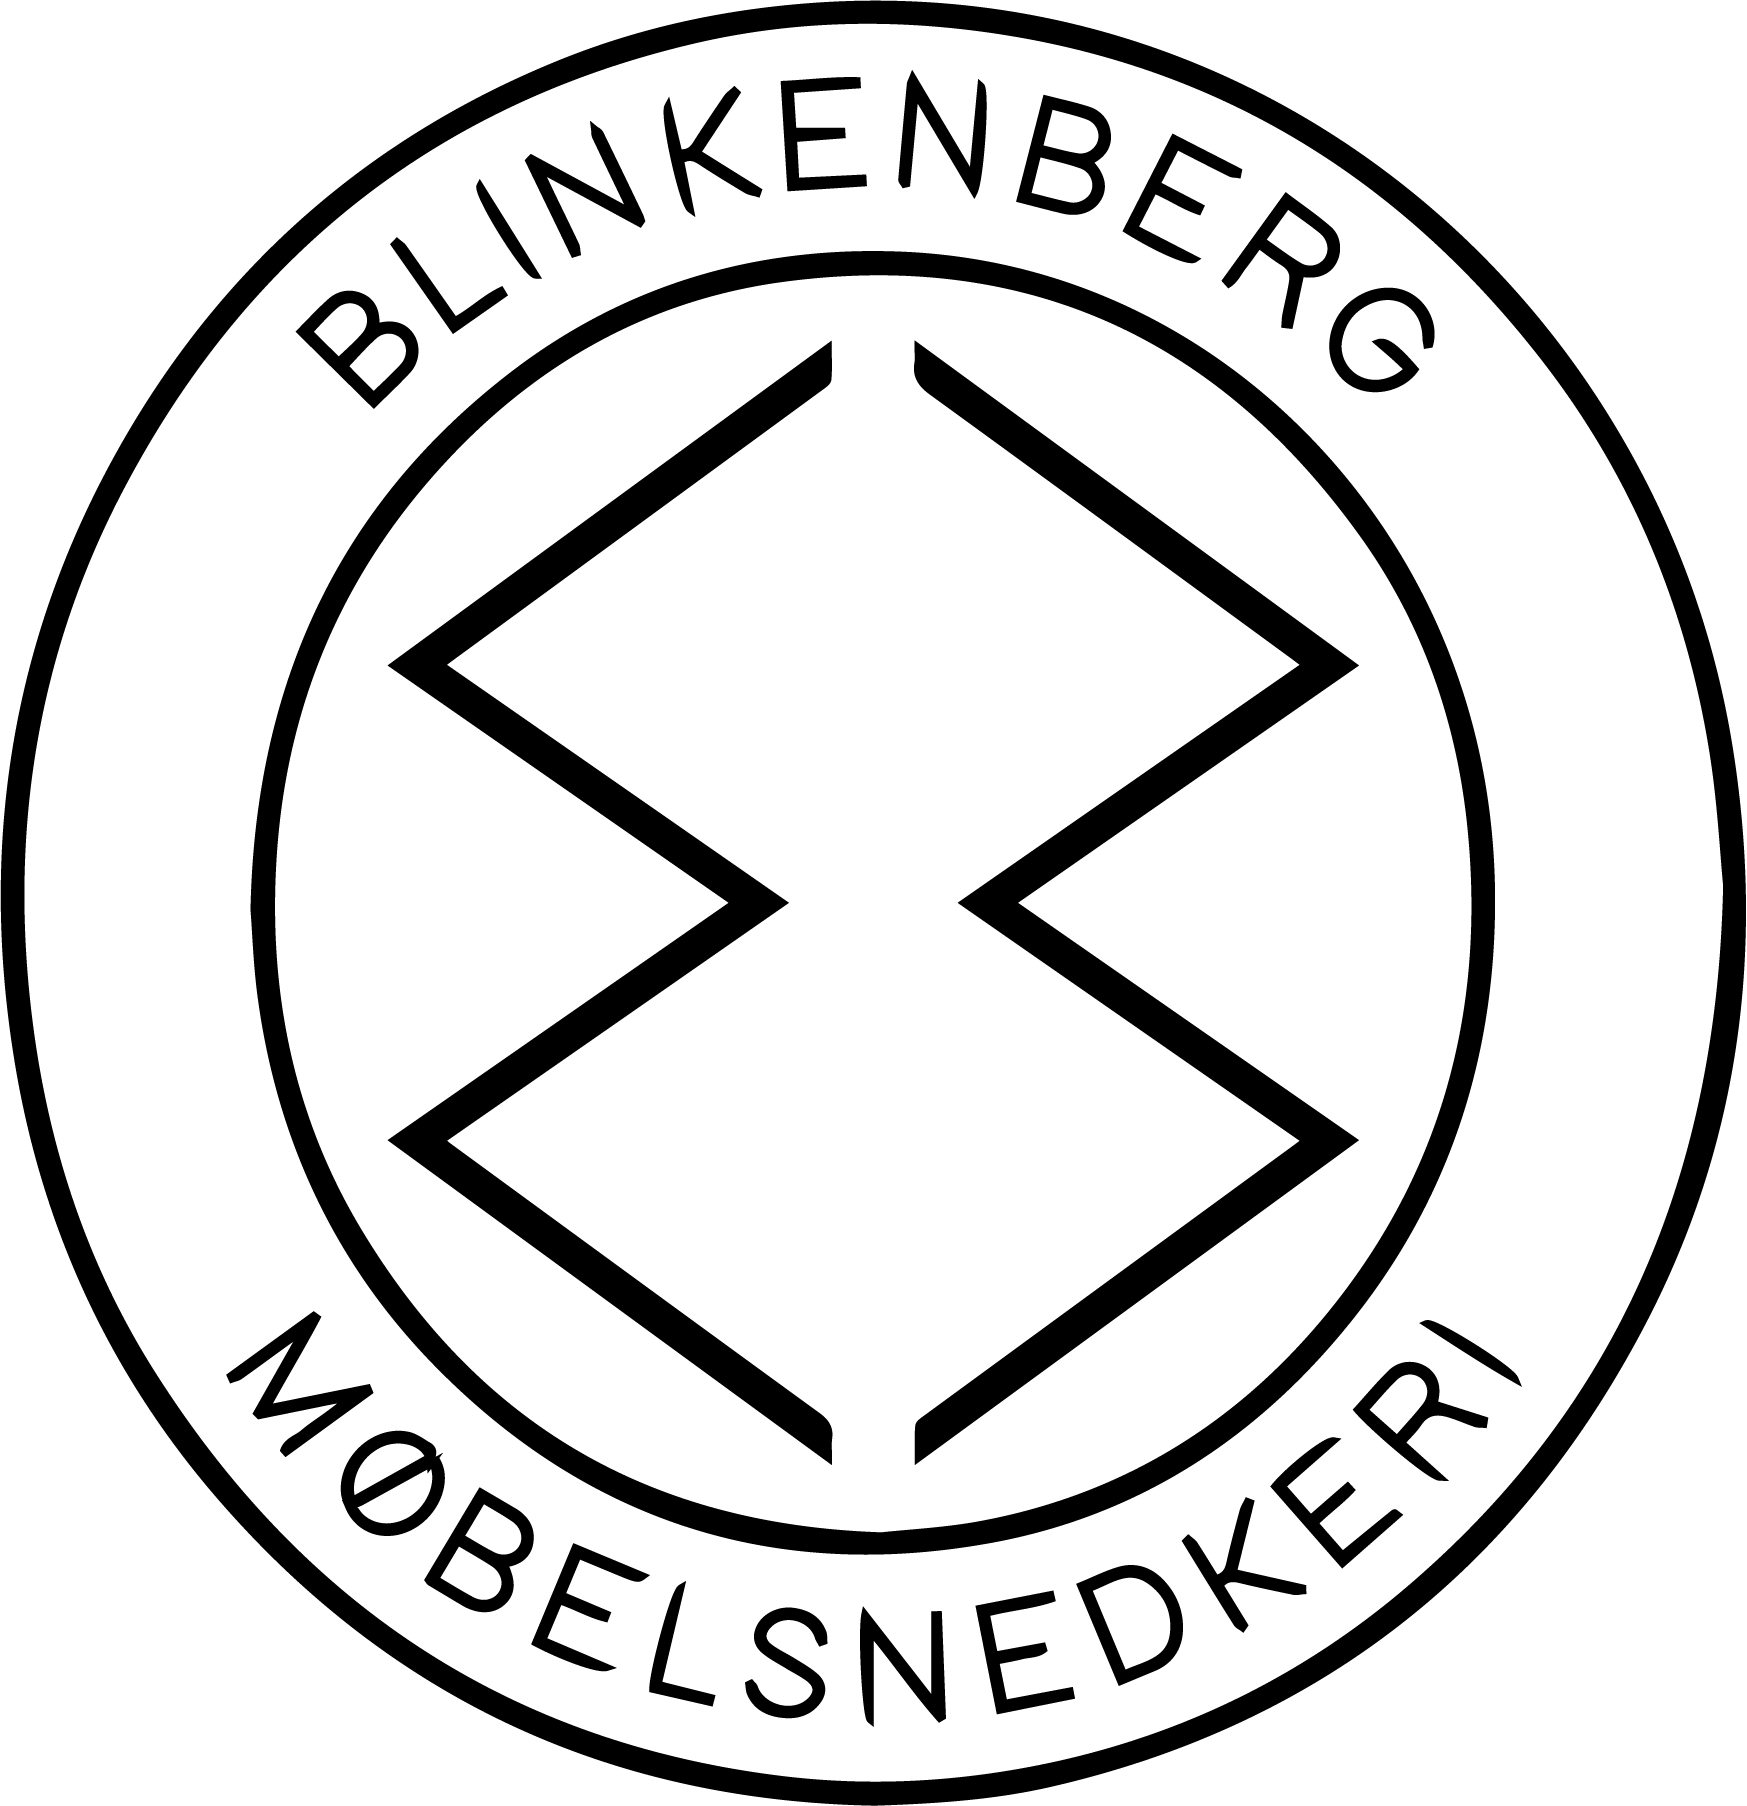 Blinkenberg møbelsnedkeri logo uden baggrund